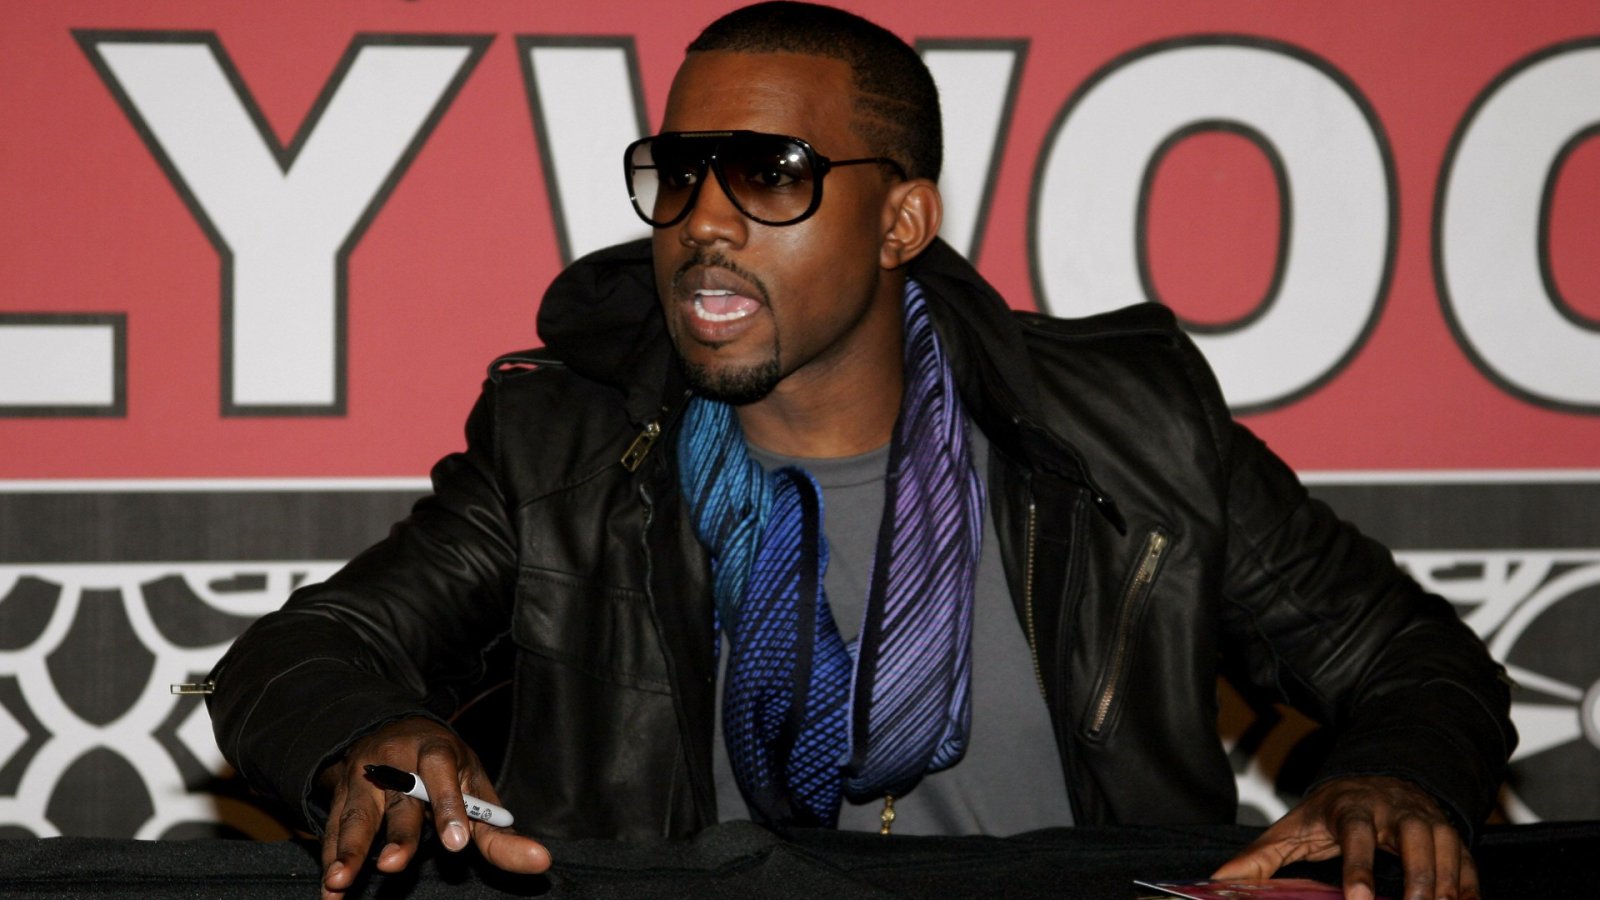 La plus grosse chute d'un artiste : Kanye West et les marques coupant les ponts